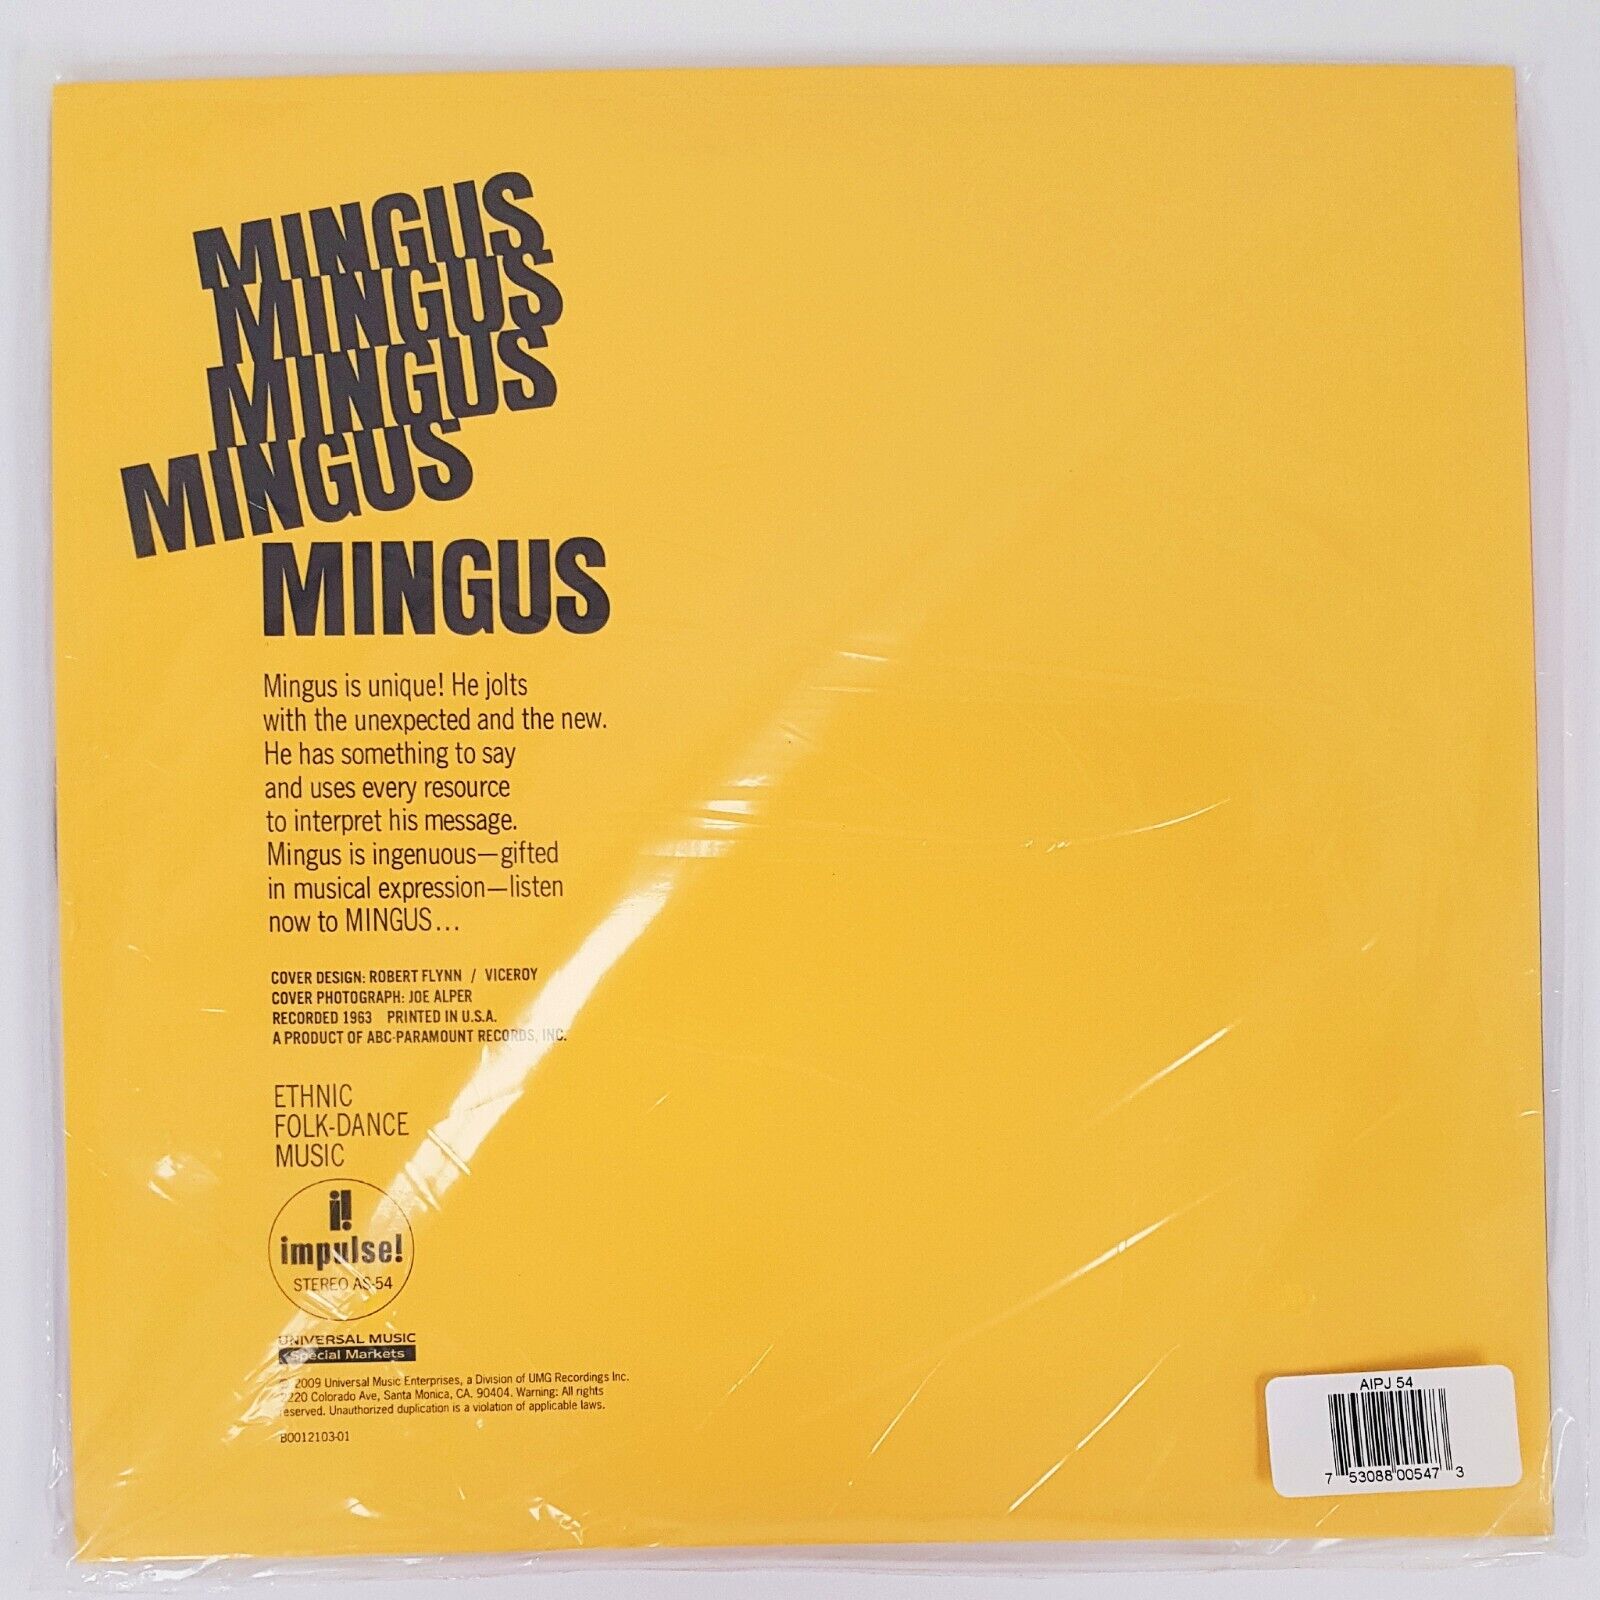 Charles Mingus - Mingus Mingus Mingus Mingus Mingus - 180g 2xLP 45RPM - (Analogue Productions)